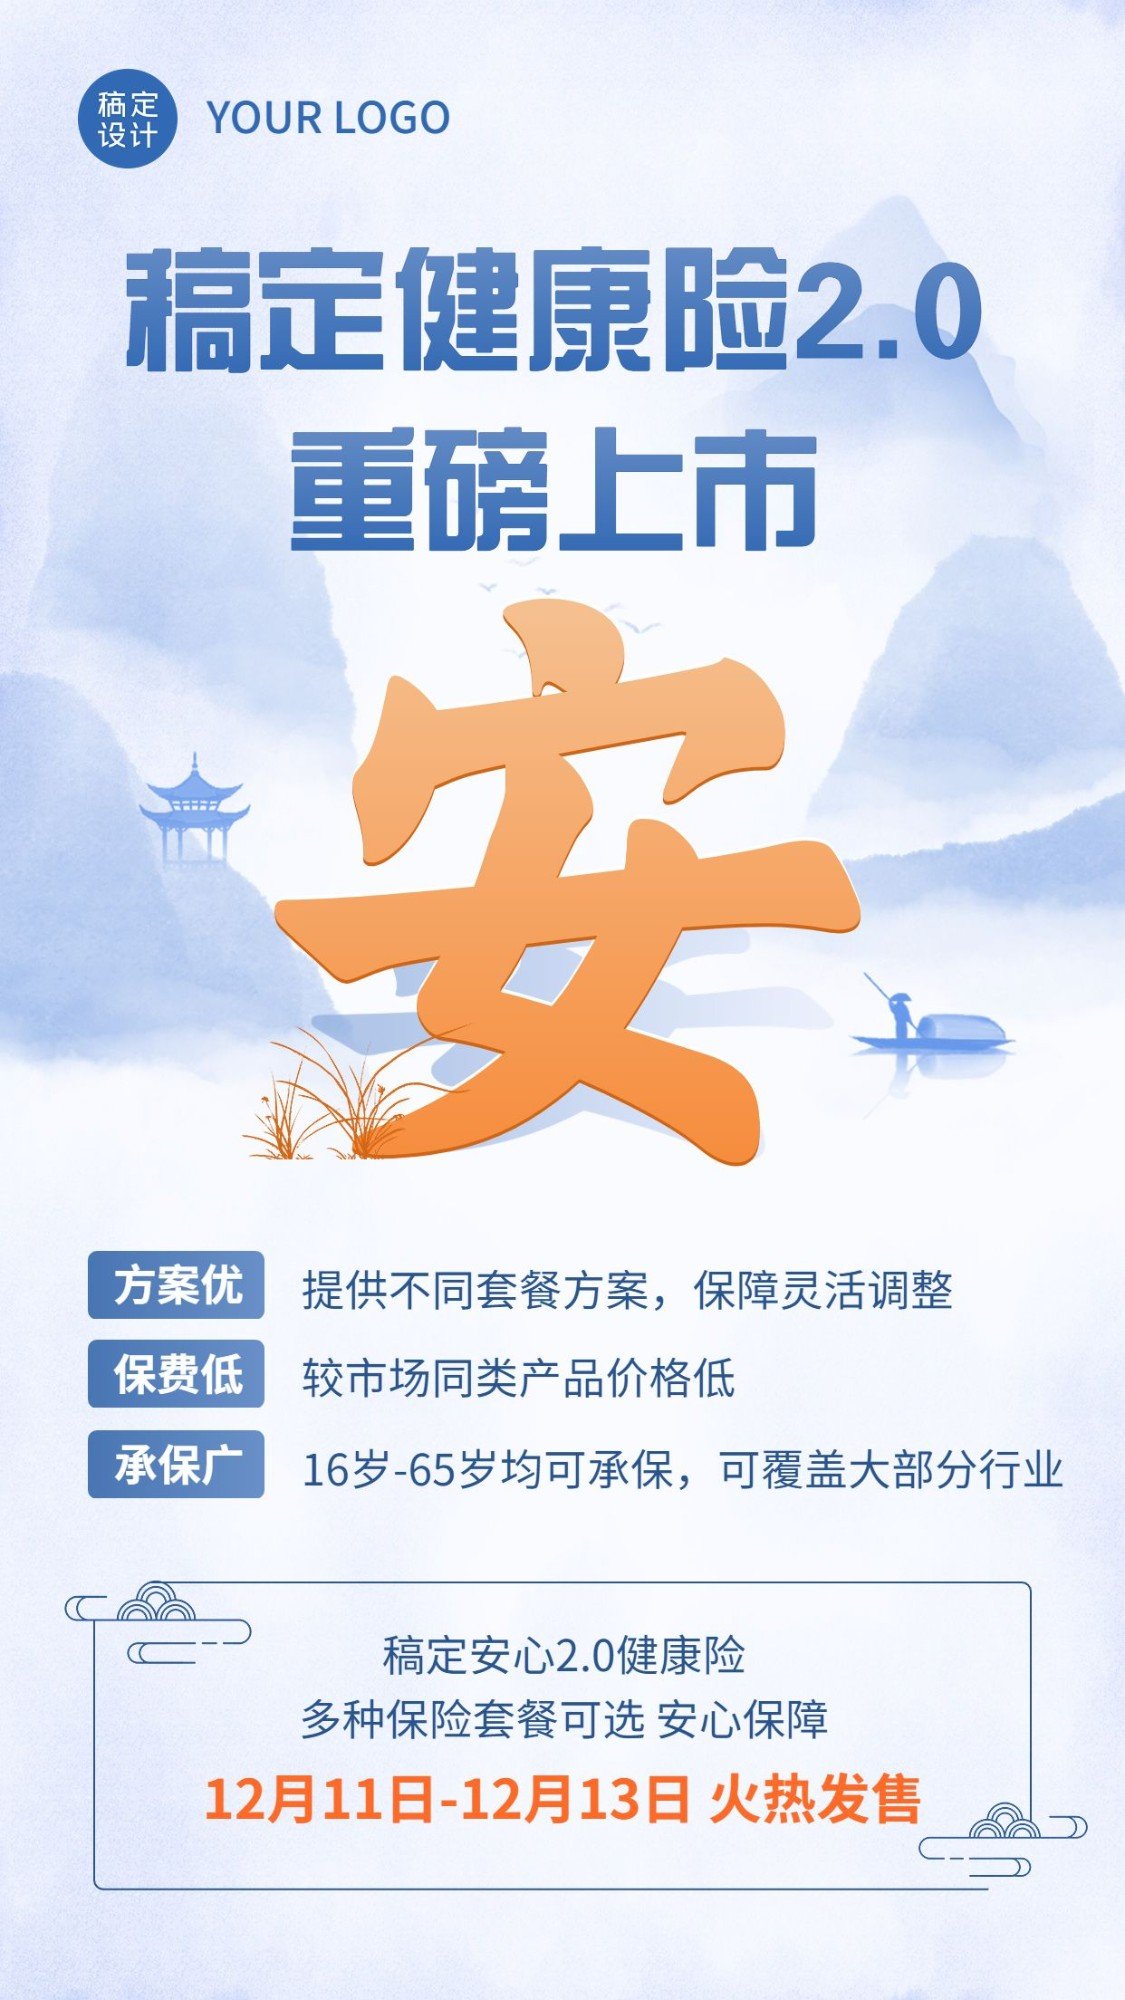 金融保险产品发售新品上市中国风手机海报预览效果